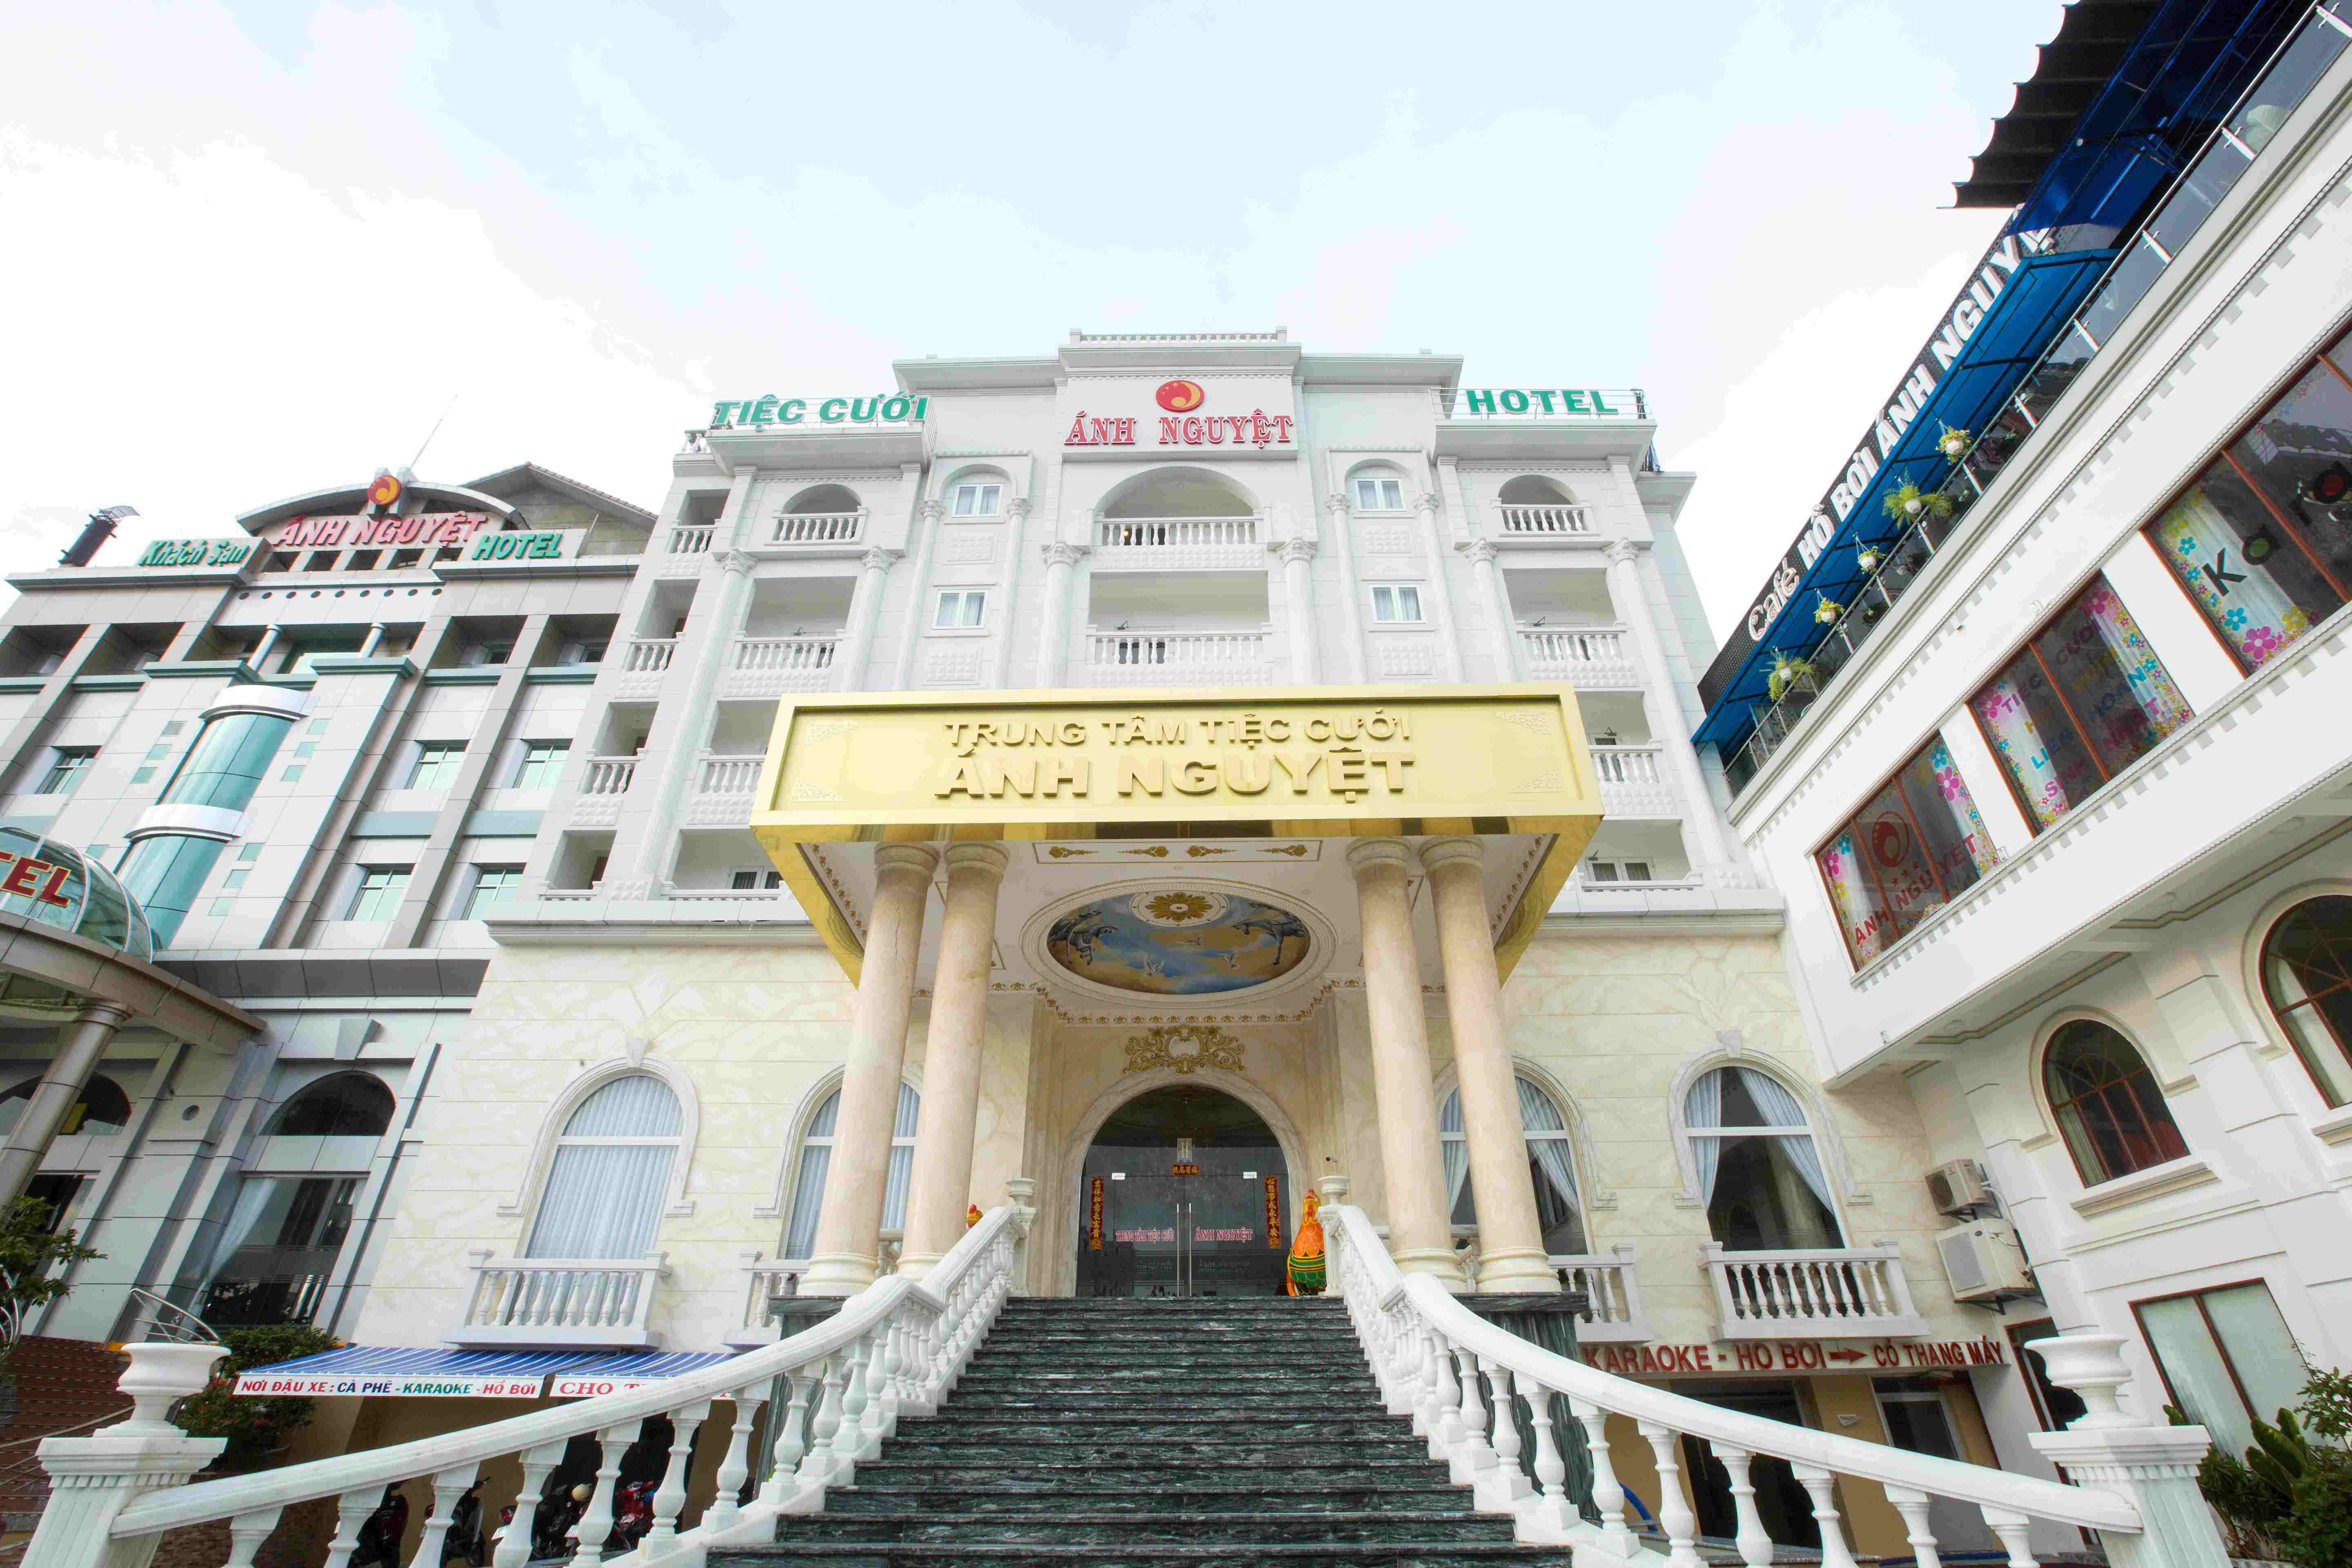 Khách sạn Ánh Nguyệt